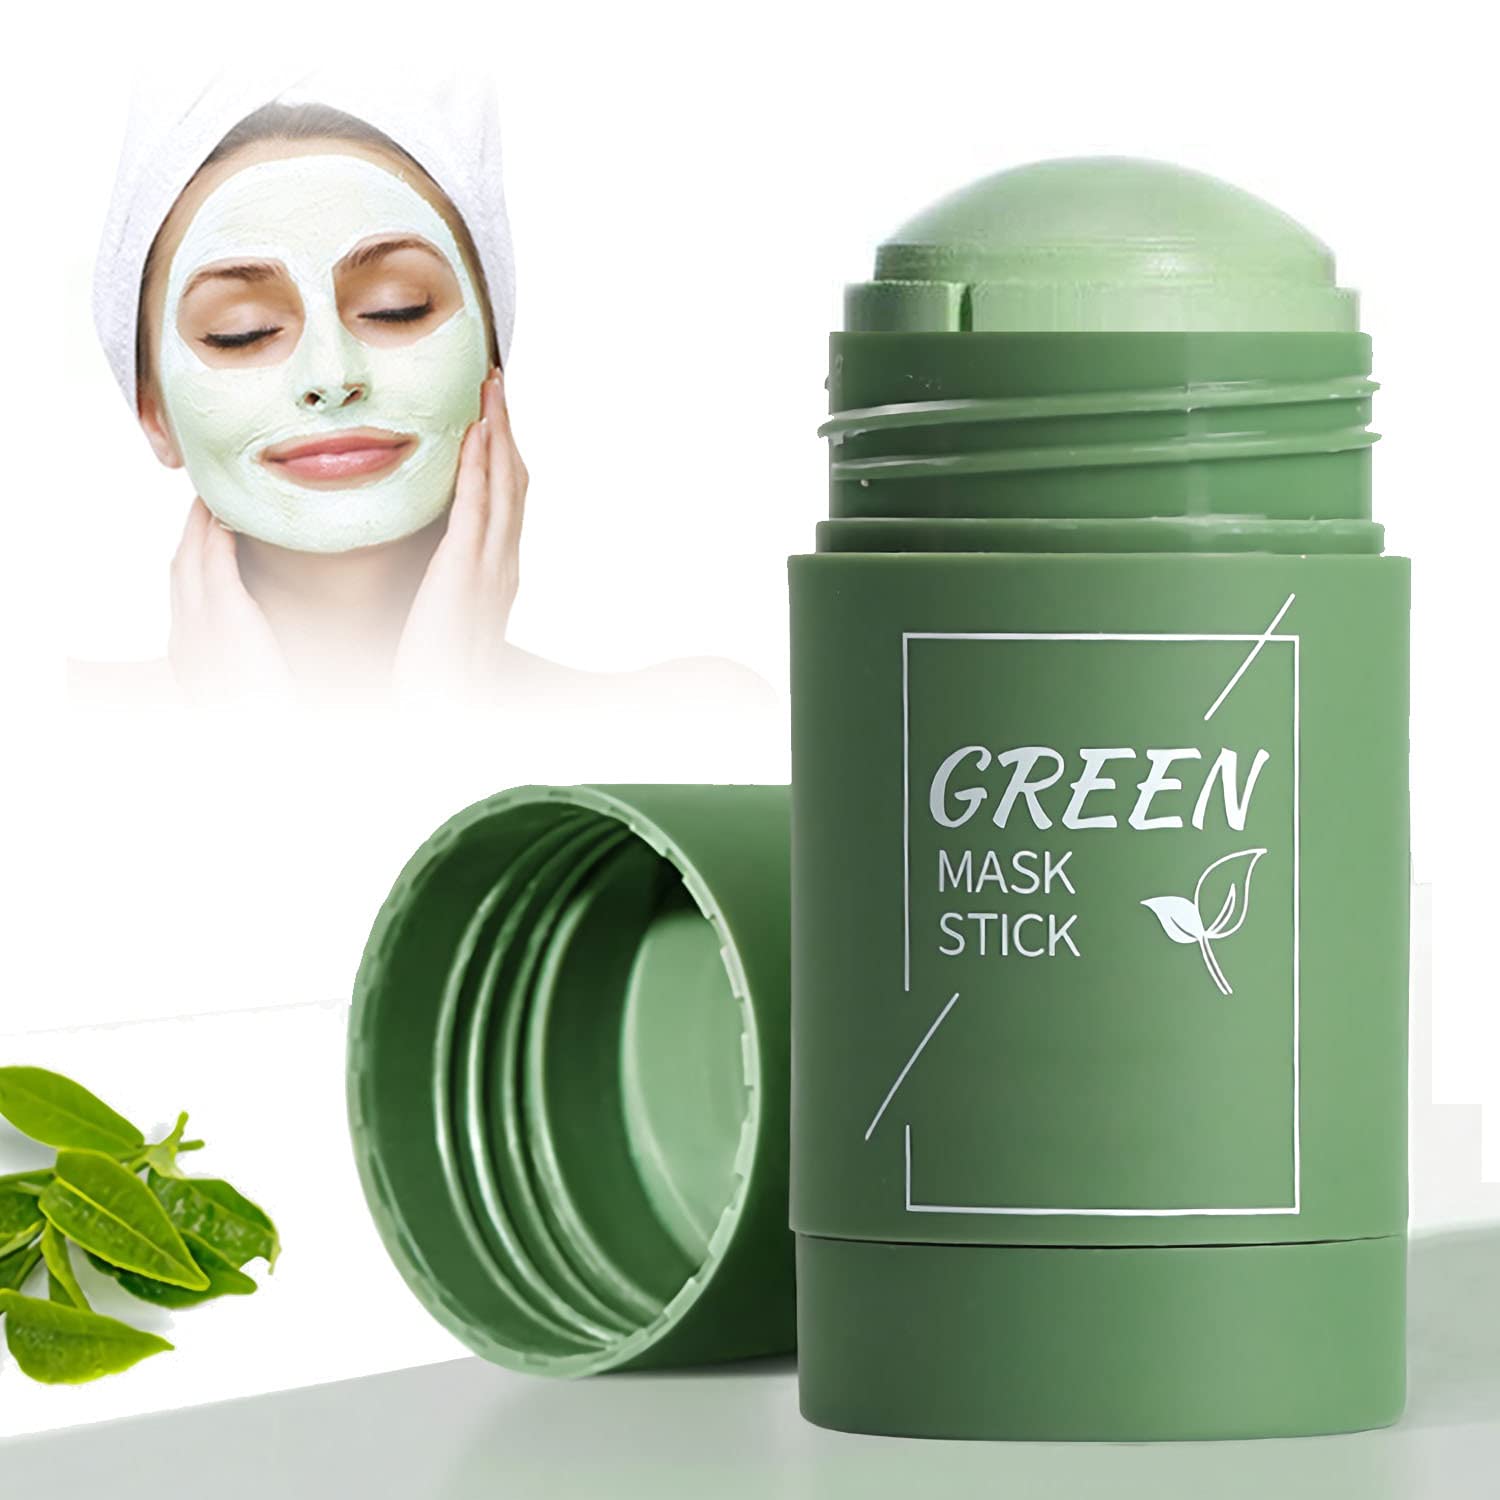 Green Acne Stick - dr max - kde koupit - heureka - v lékárně - zda webu výrobce